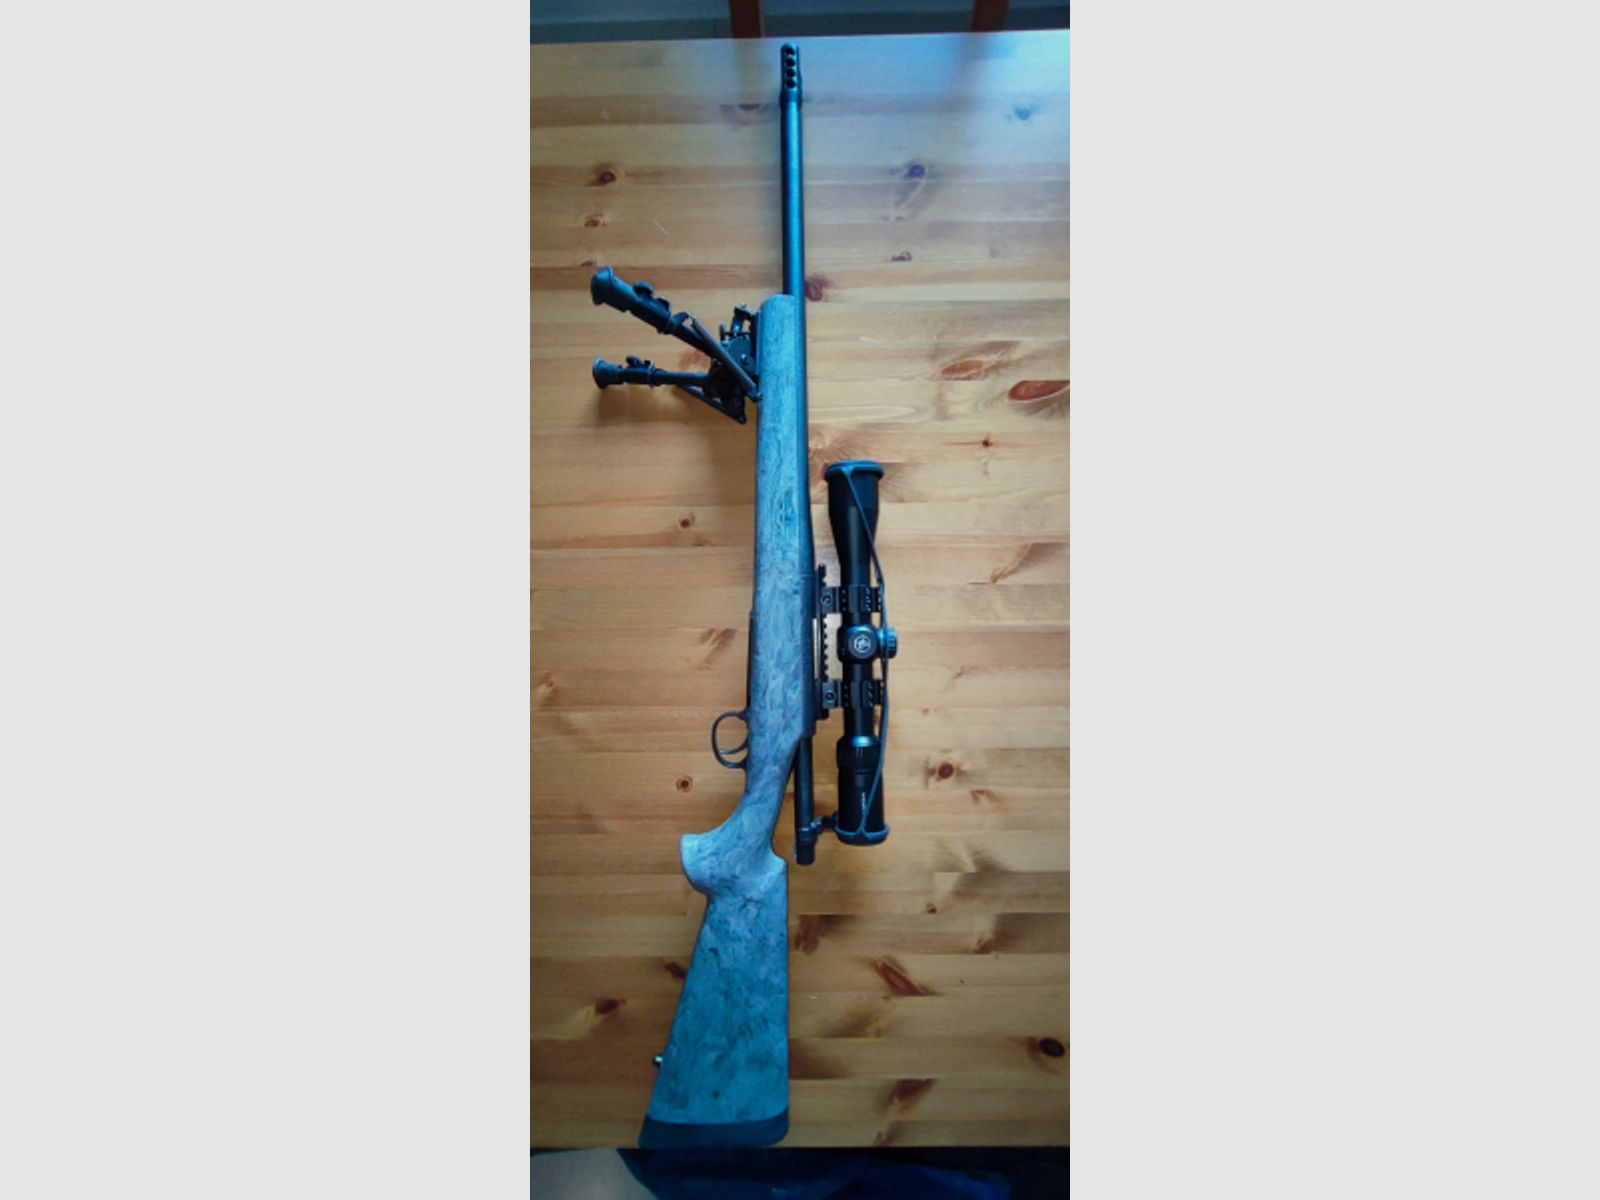 Remington 700 Sniper ACC-SD